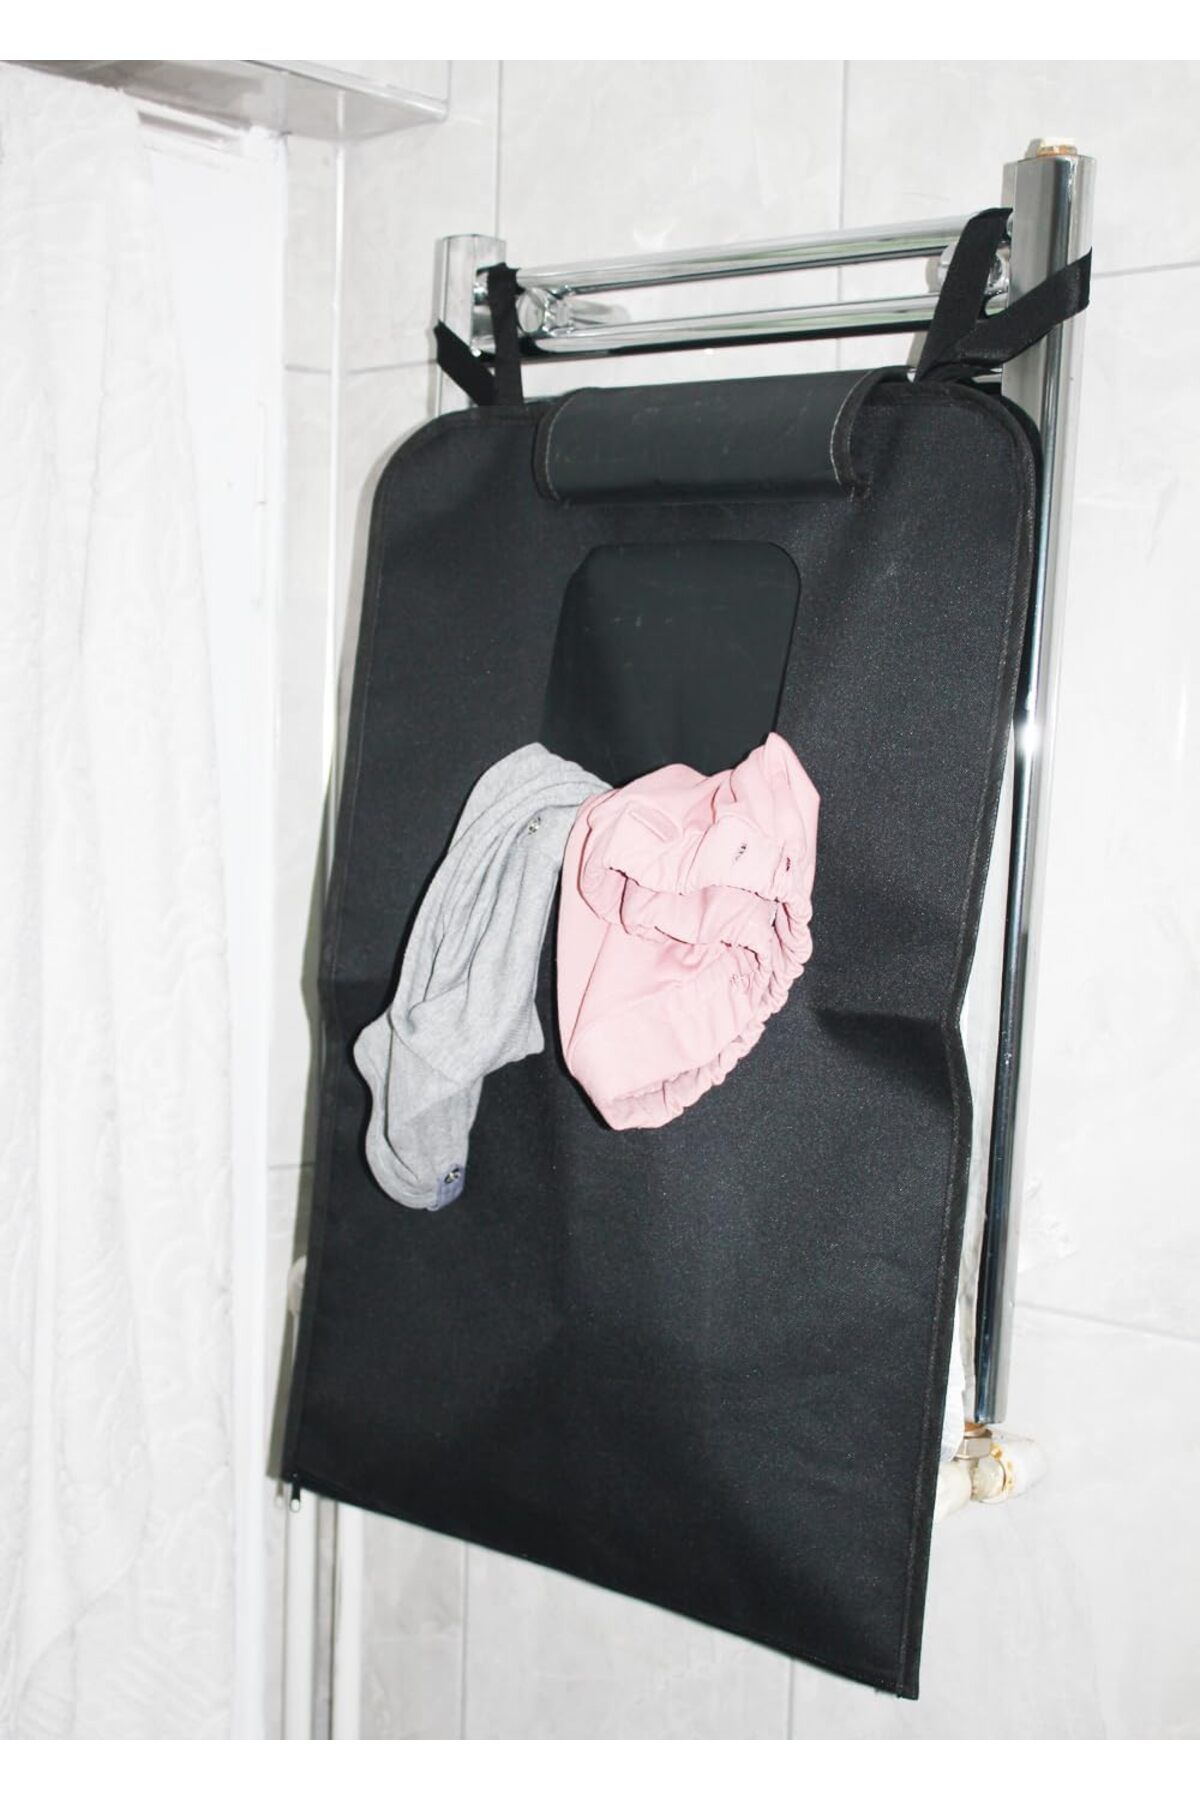 Genel Markalar Kapı Arkası Askılı Kirli Çamaşır Sepeti Fermuarlı Çamaşır Torbası (Siyah)